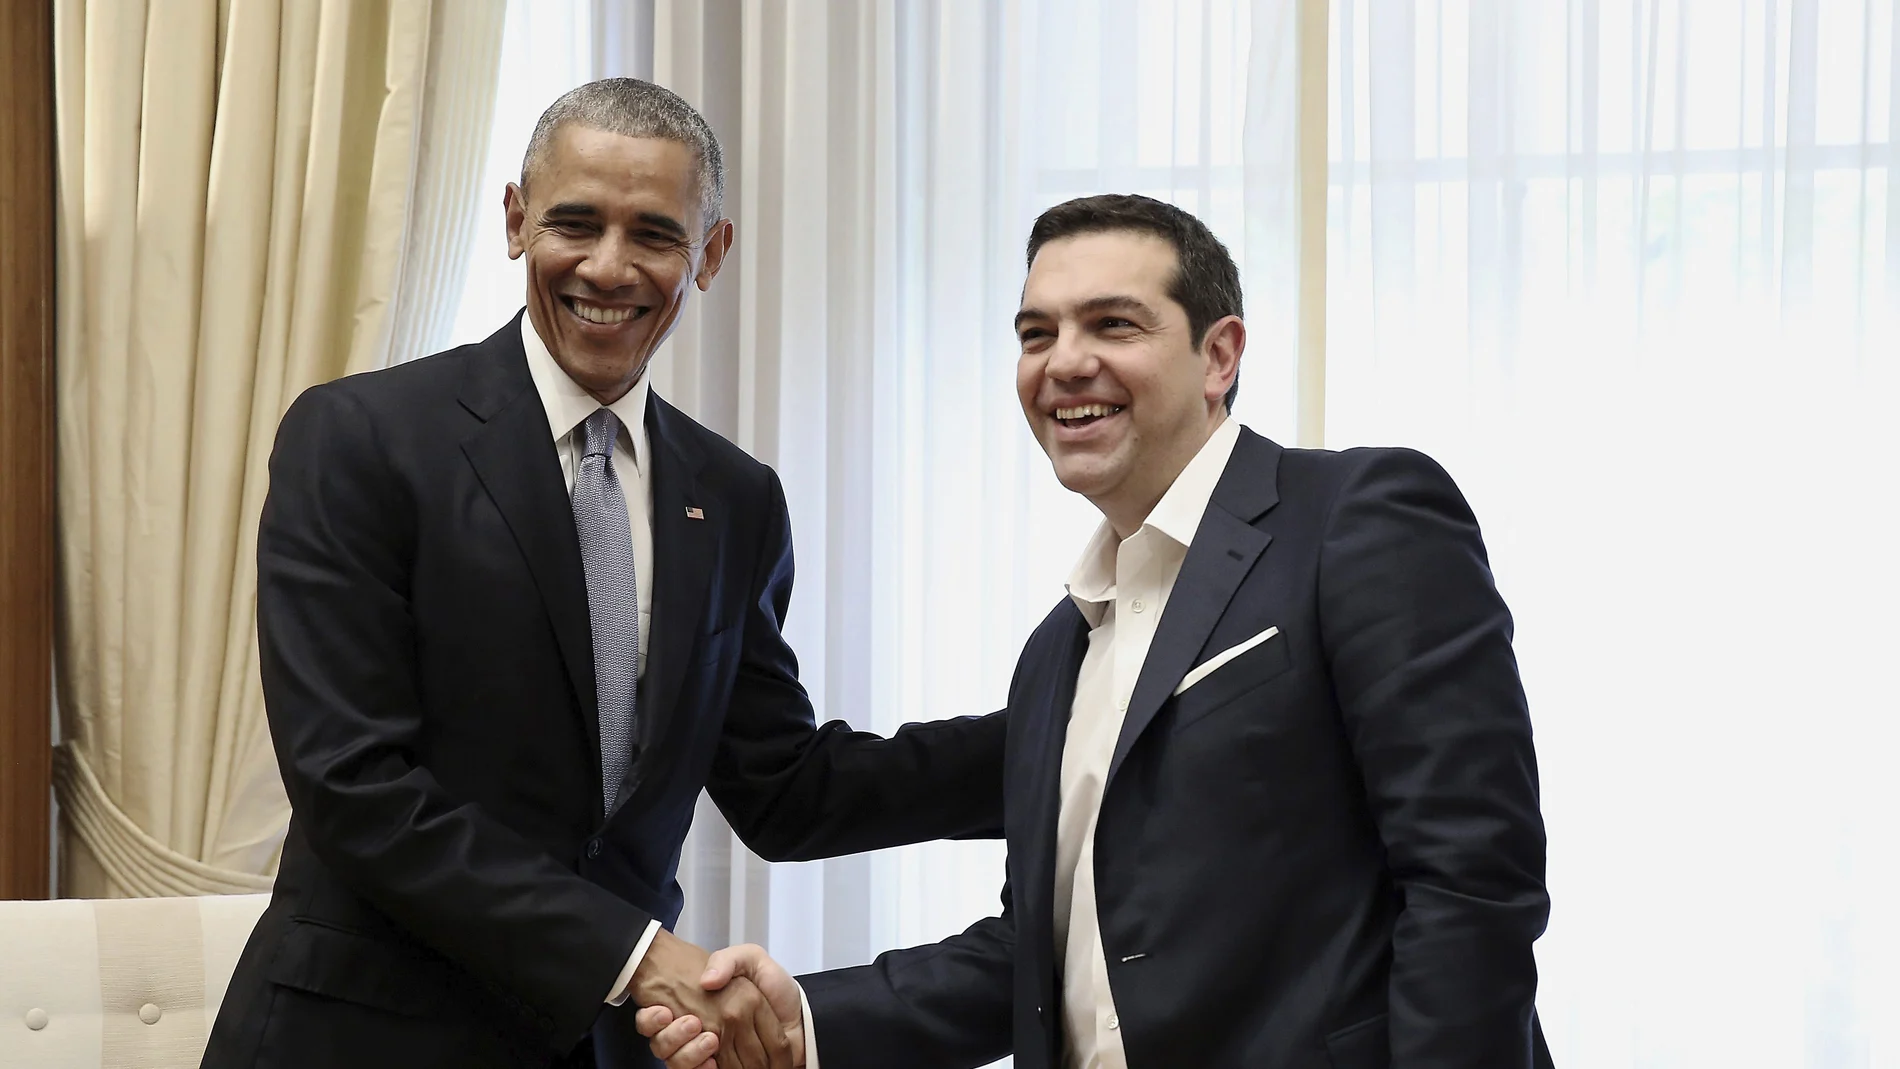 El primer ministro griego, Alexis Tsipras, se reúne con el presidente estadounidense, Barack Obama, en Atenas 